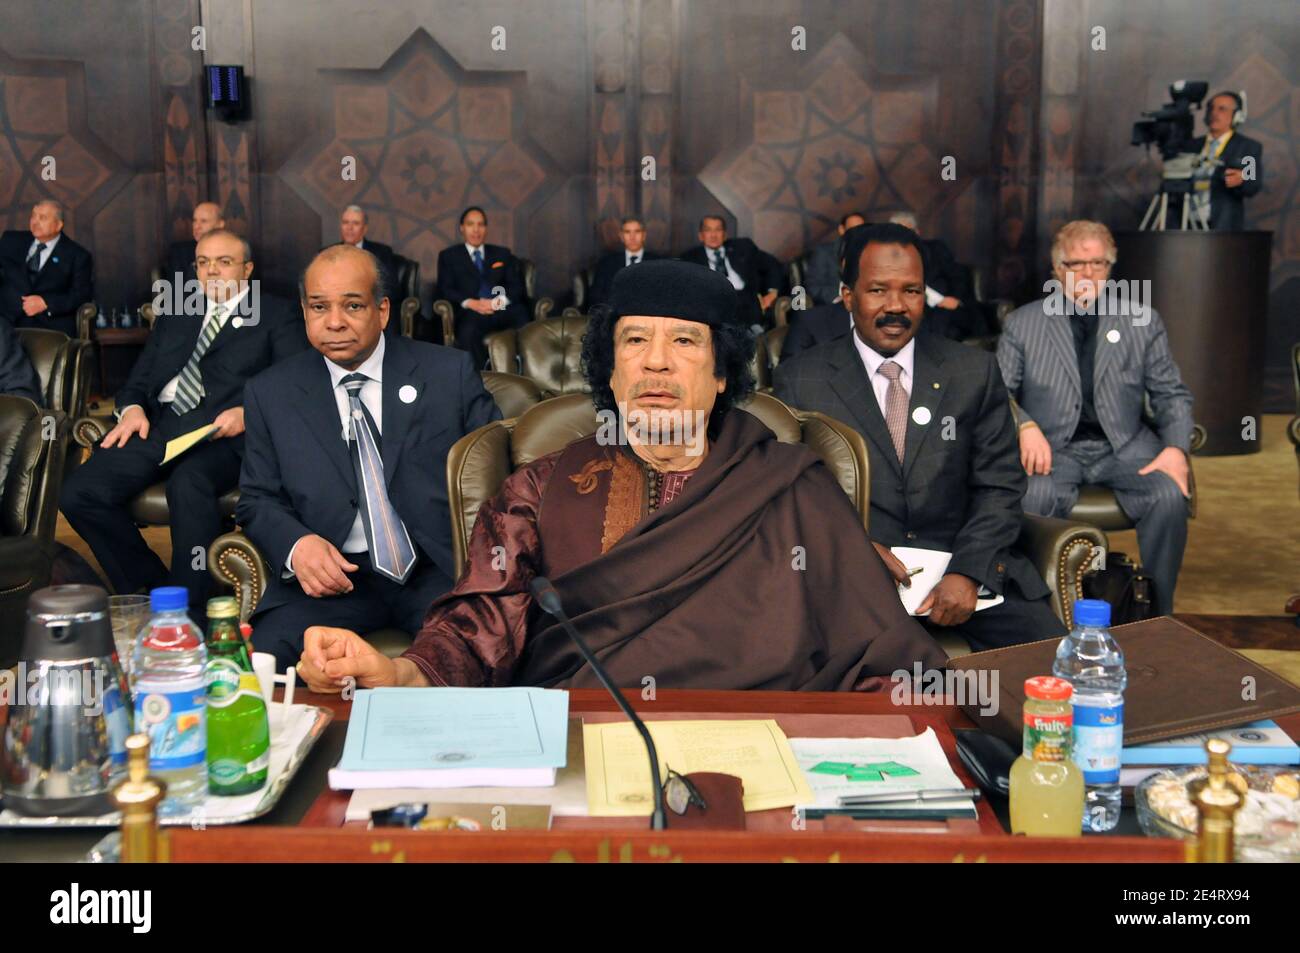 Le dirigeant libyen Mouammar Kadhafi et Bashir Saleh Bashir sont vus lors de la session inaugurale du 20e sommet des dirigeants de la Ligue arabe à Damas, en Syrie, le 29 mars 2008. Photo par Ammar Abd Rabbo/ABACAPRESS.COM Banque D'Images